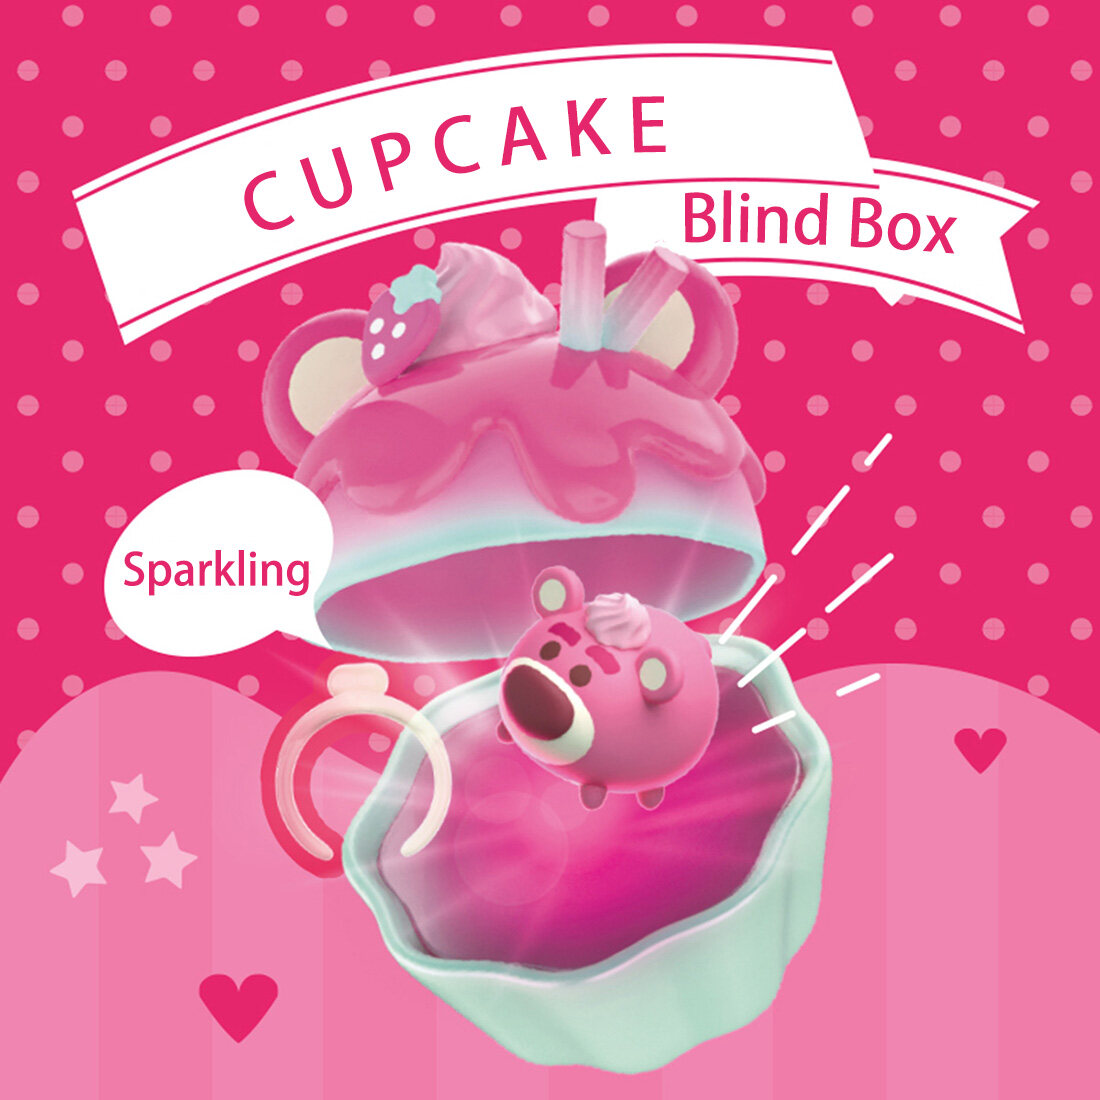 MINISO Blind Box Disney Songsong Cupcake Theme Starlight Promise Blind Box